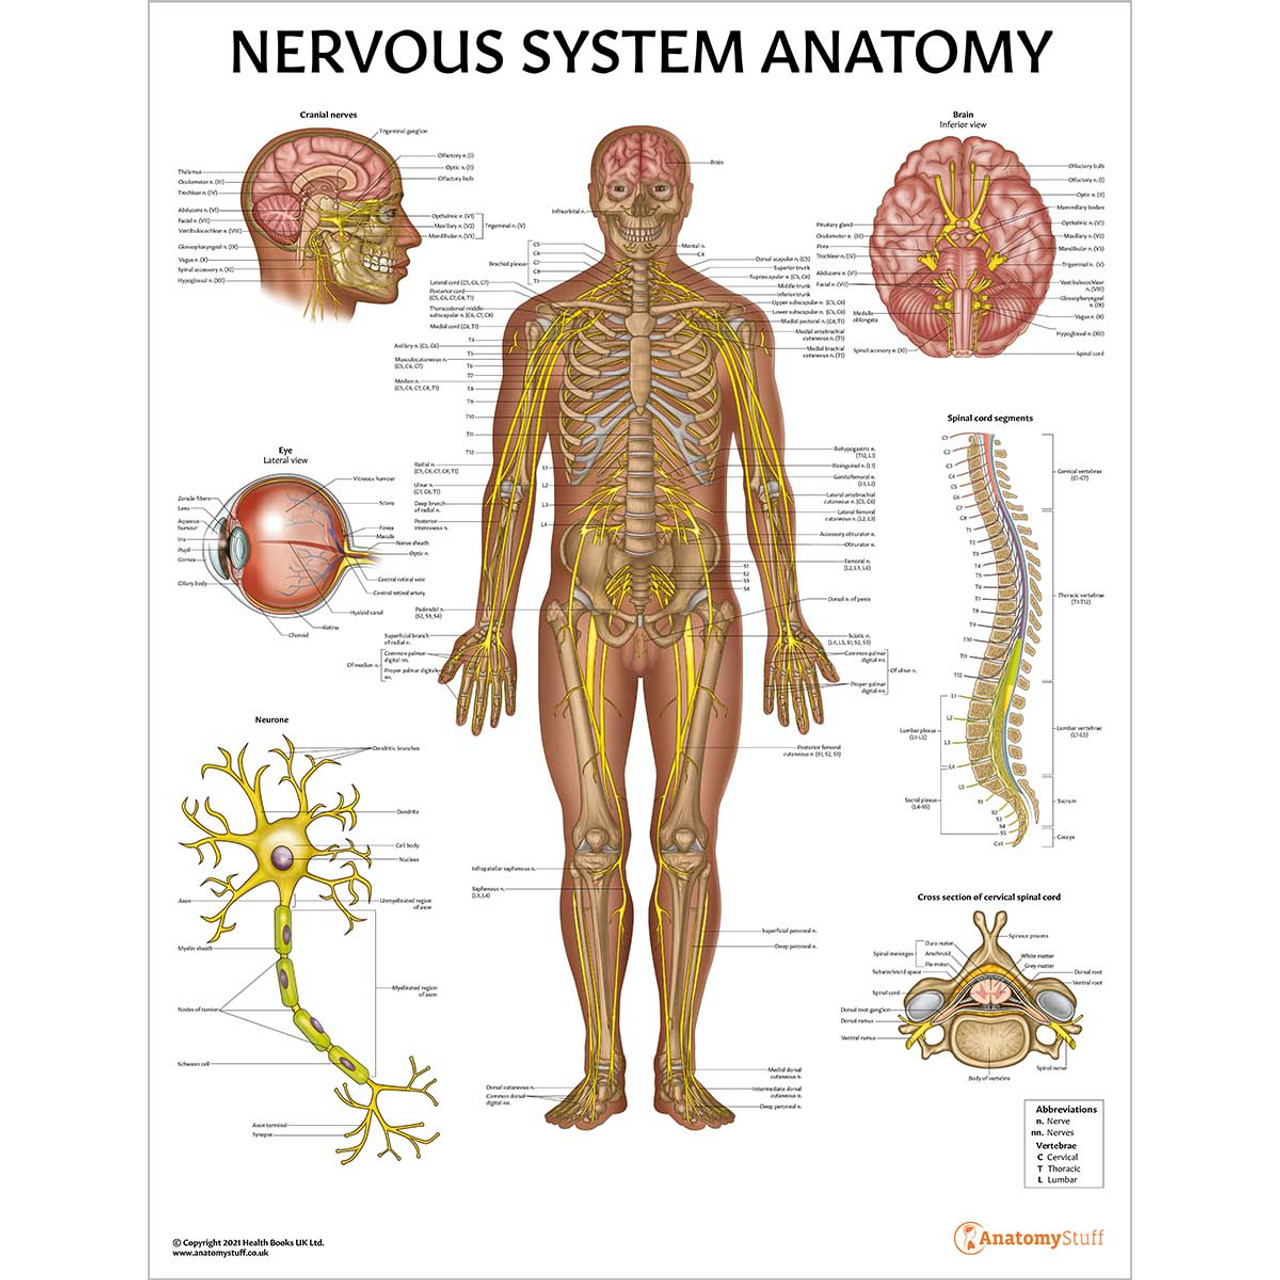 جزوه سيستم عصبي (Nervous System)